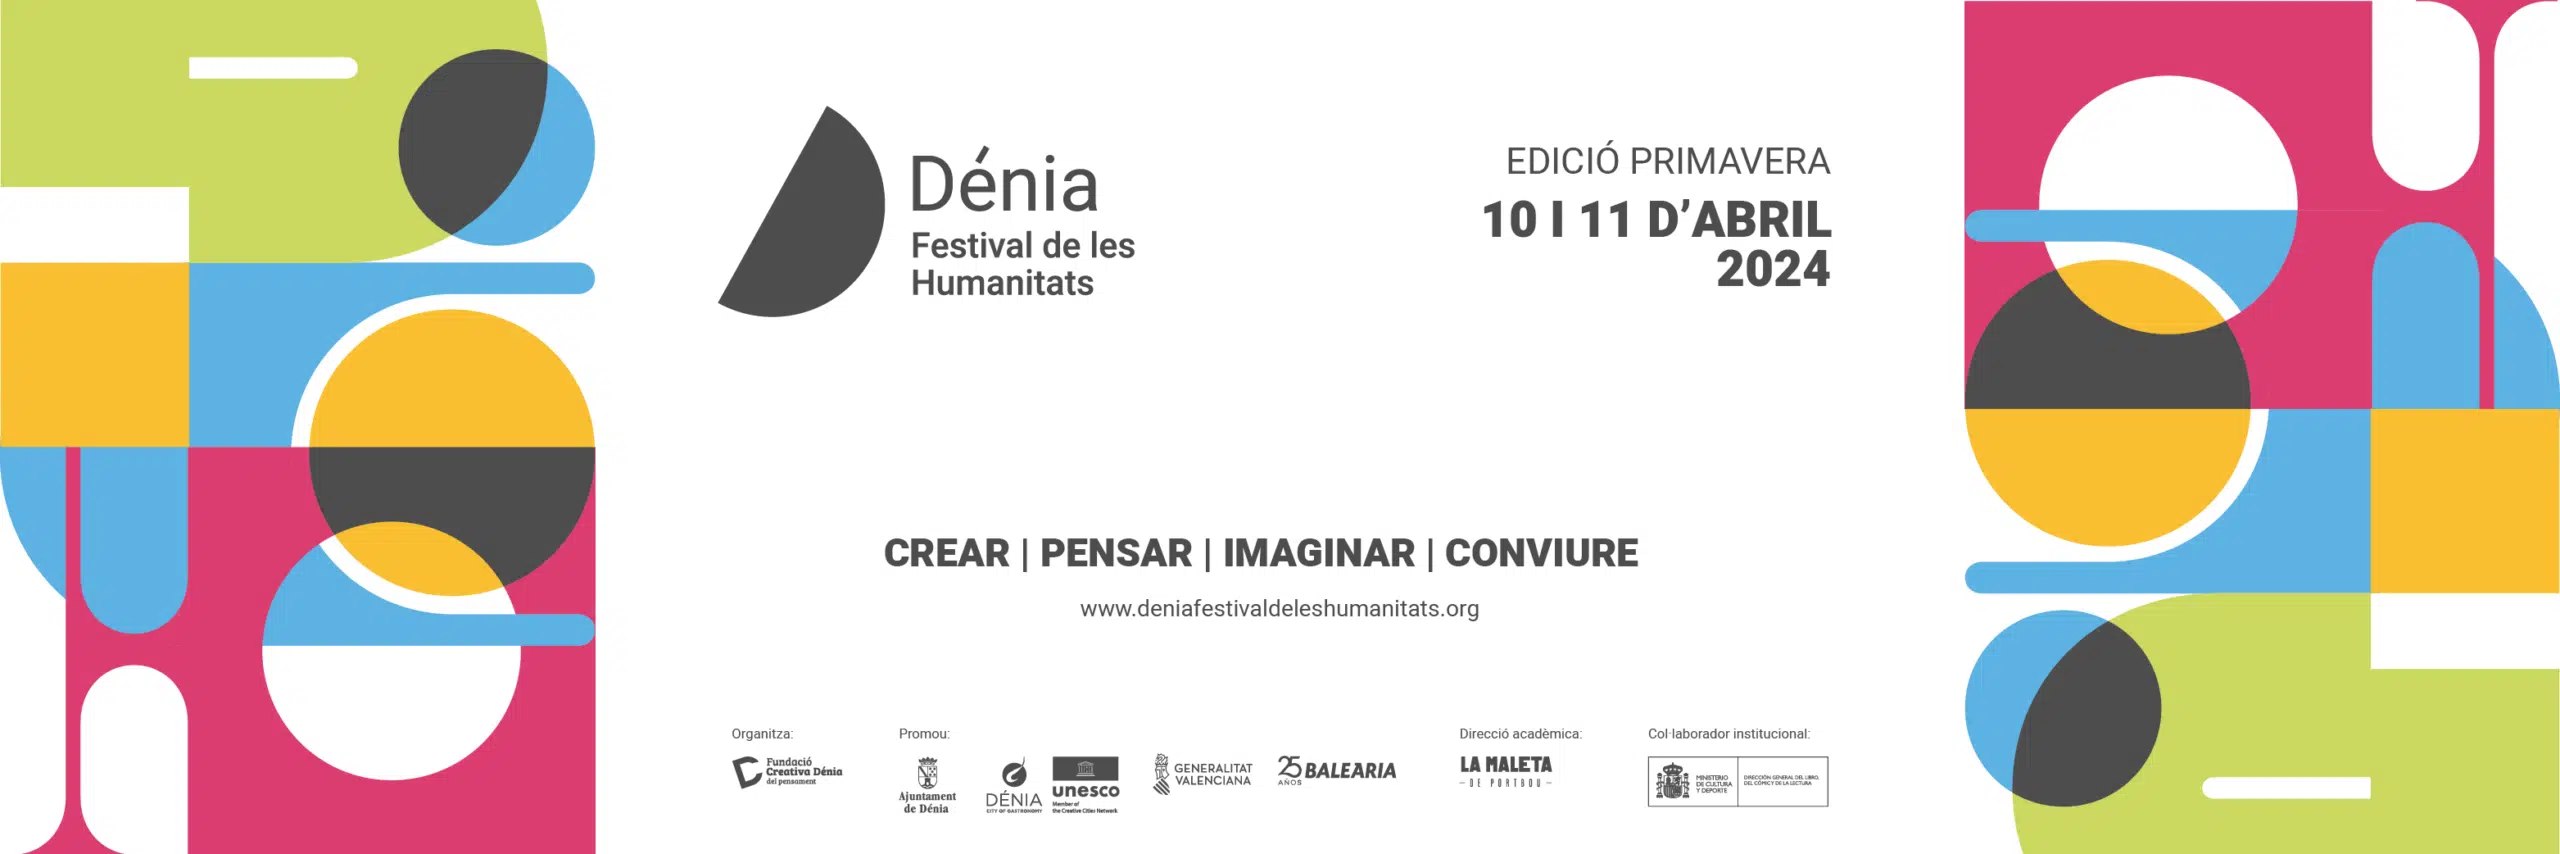 Dénia Festival de les Humanitats edición primavera 2024